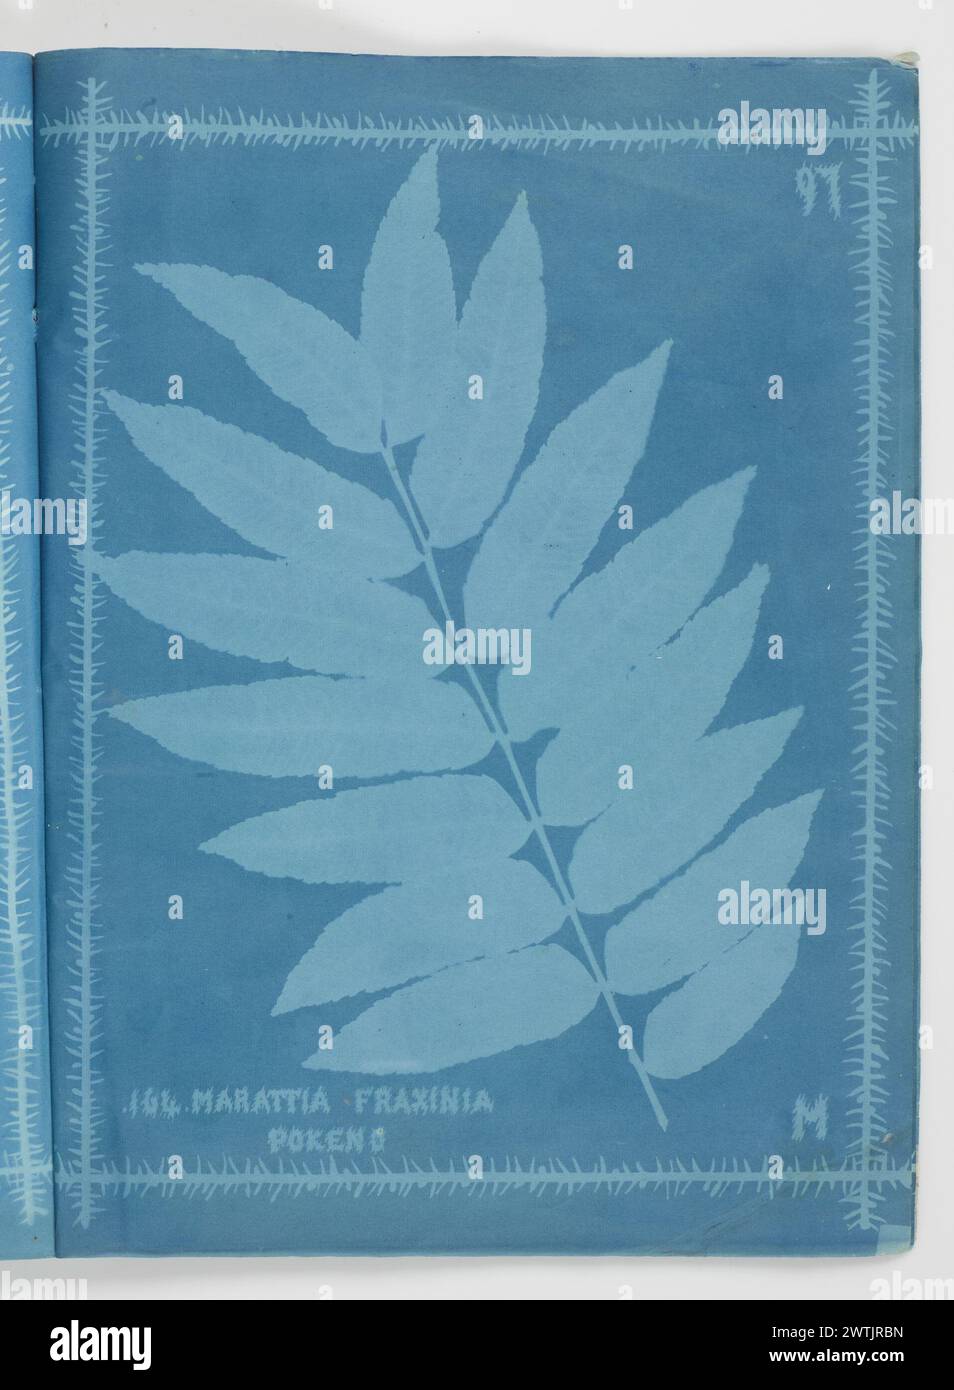 Marattia fraxinia, Pokeno. From the album: New Zealand ferns. 172 varieties cyanotypes, photographic prints Stock Photo